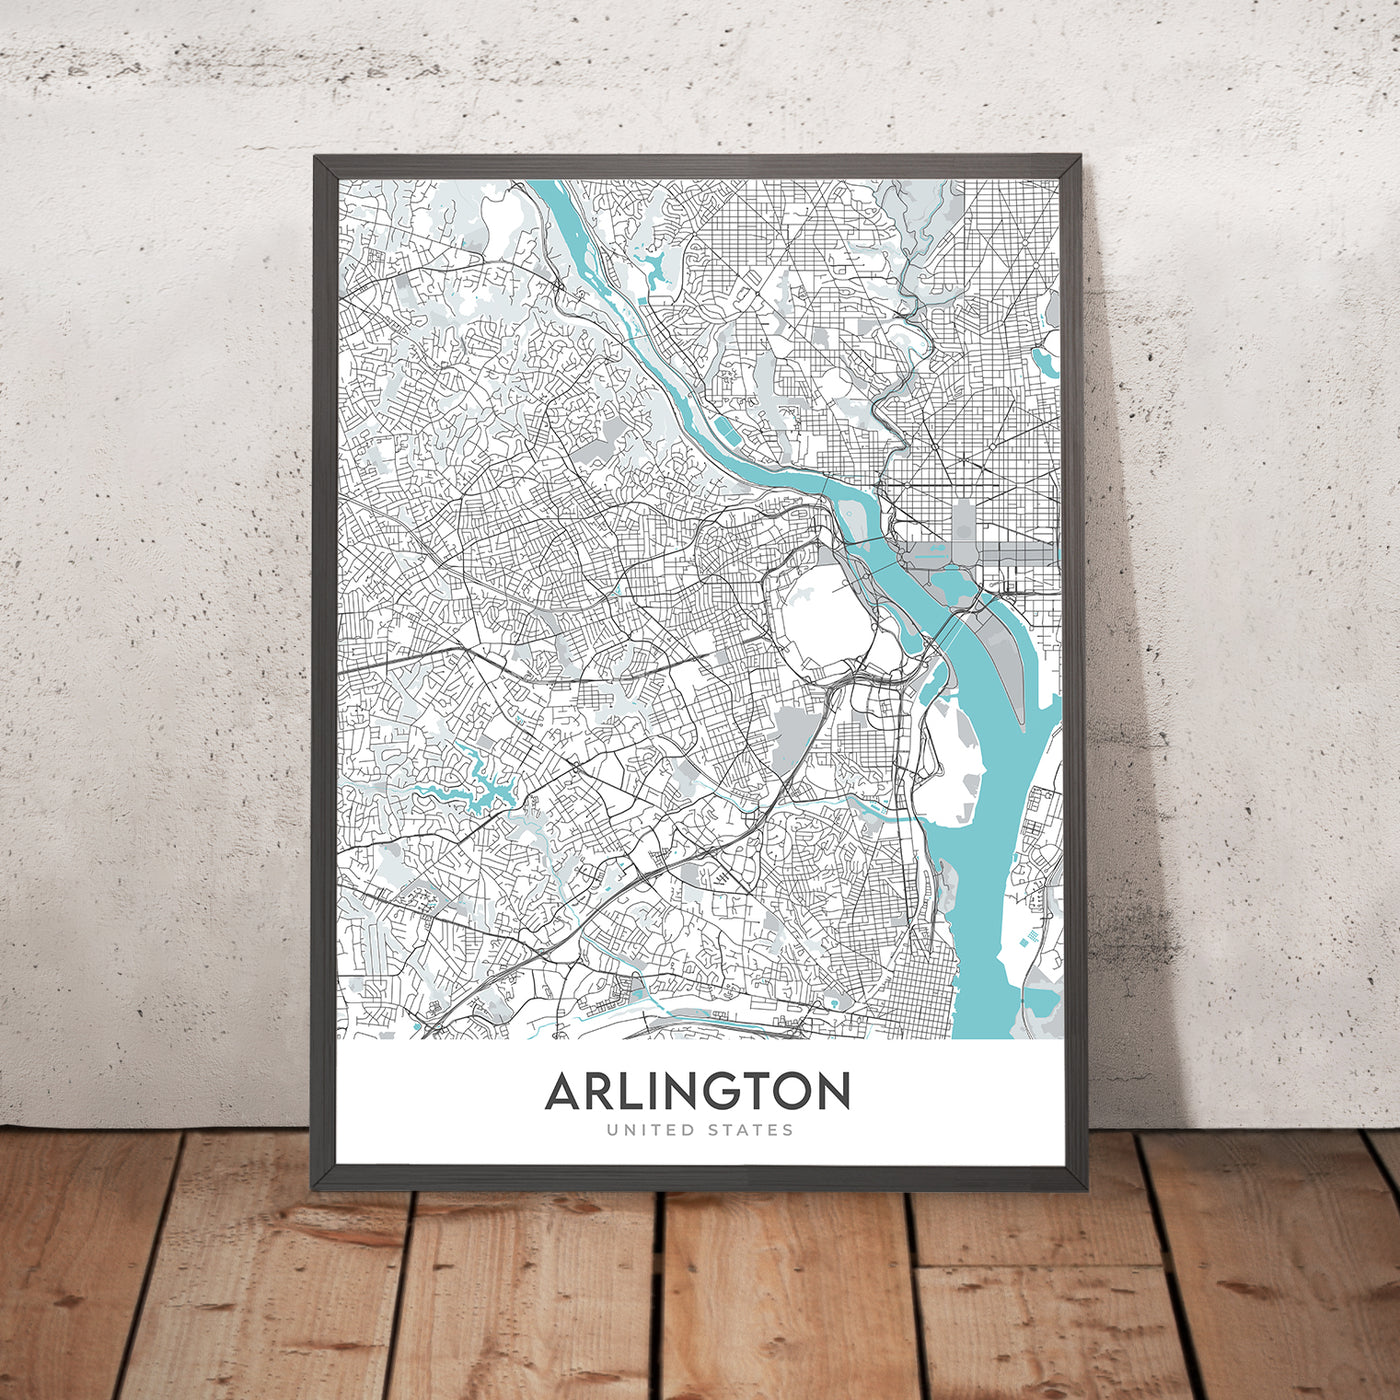 Plan de la ville moderne d'Arlington, Virginie : cimetière national d'Arlington, Pentagone, Maison Blanche, Crystal City, Rosslyn